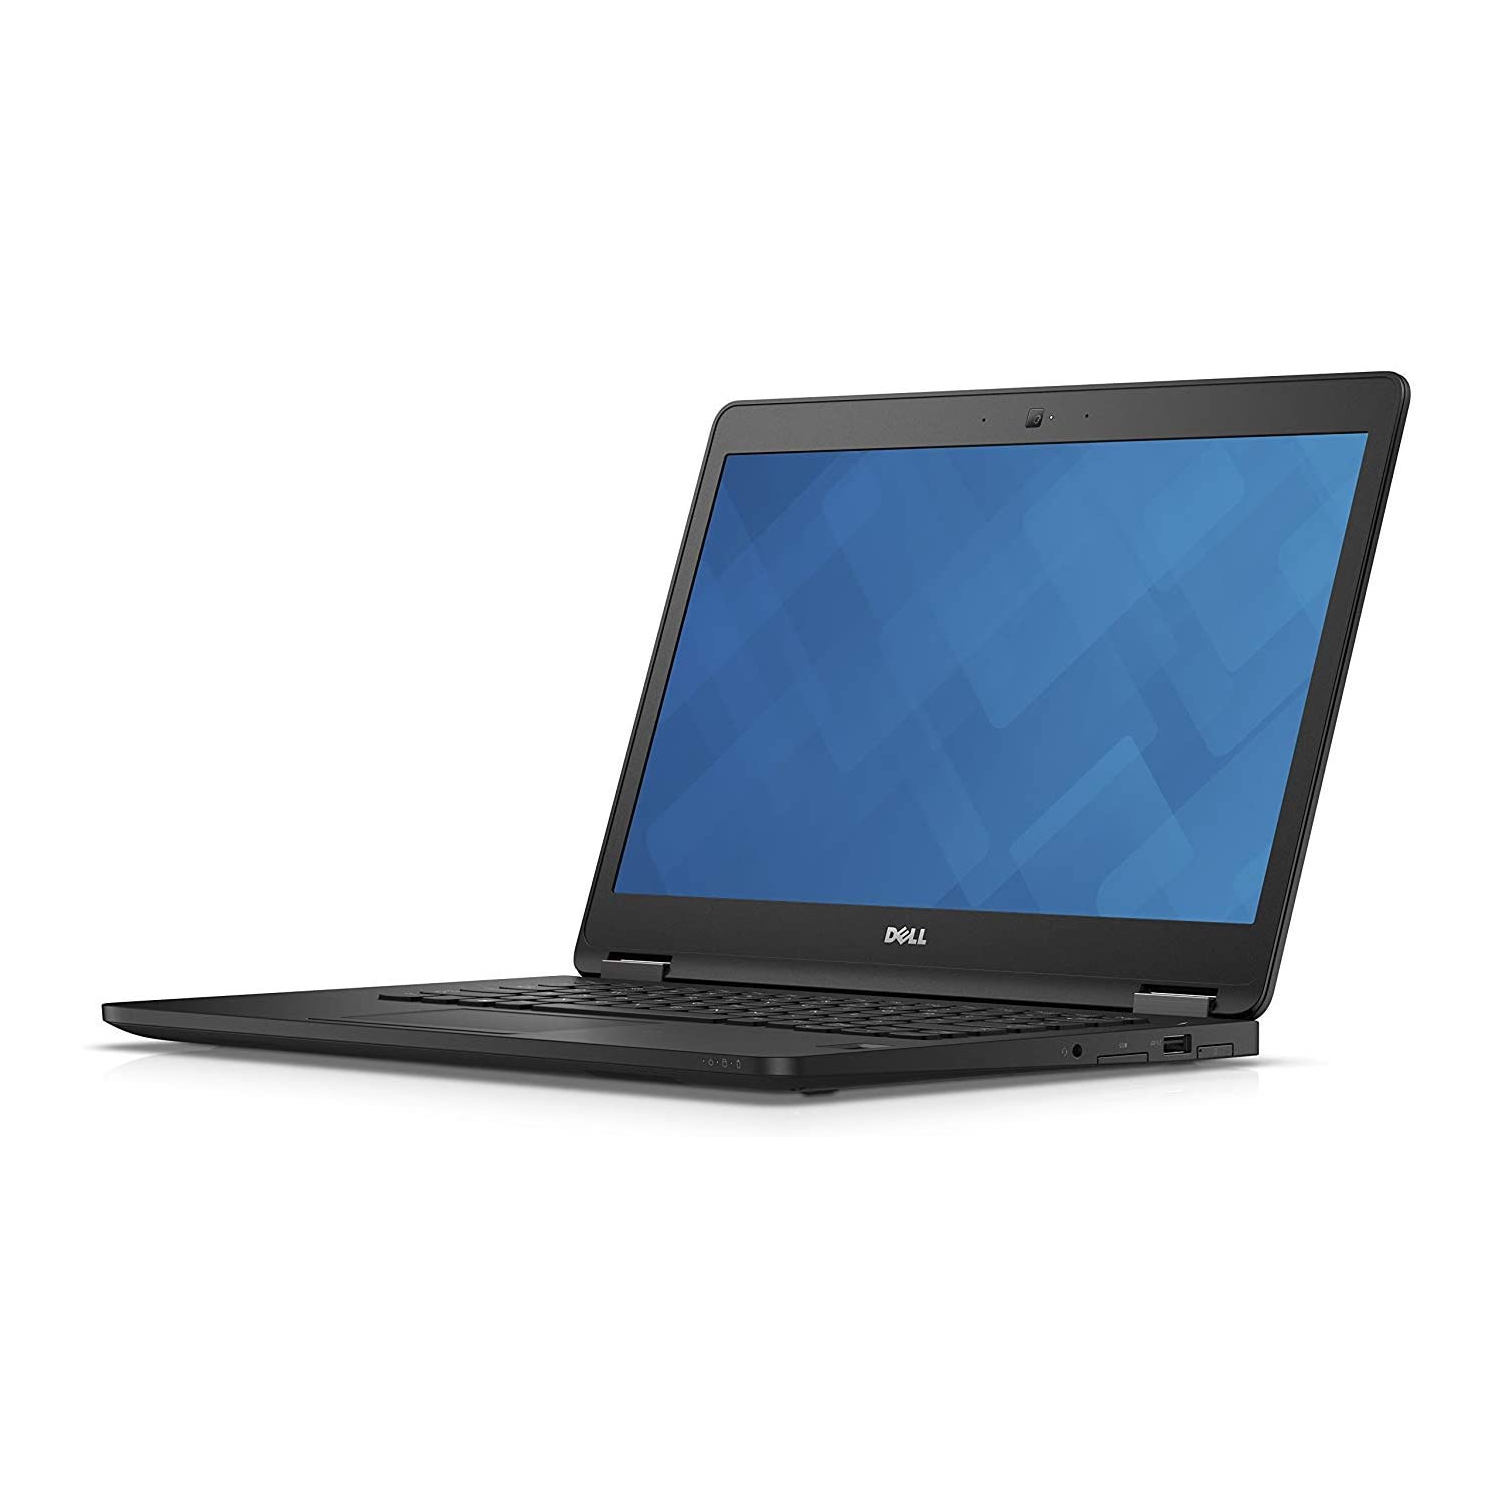 Dell Latitude E7470 Ultrabook: i5-6600U 2.6GHz, 8GB, 256GB SSD, HDMI, 14", Webcam, Win 10 Pro – Refurbished (Good)